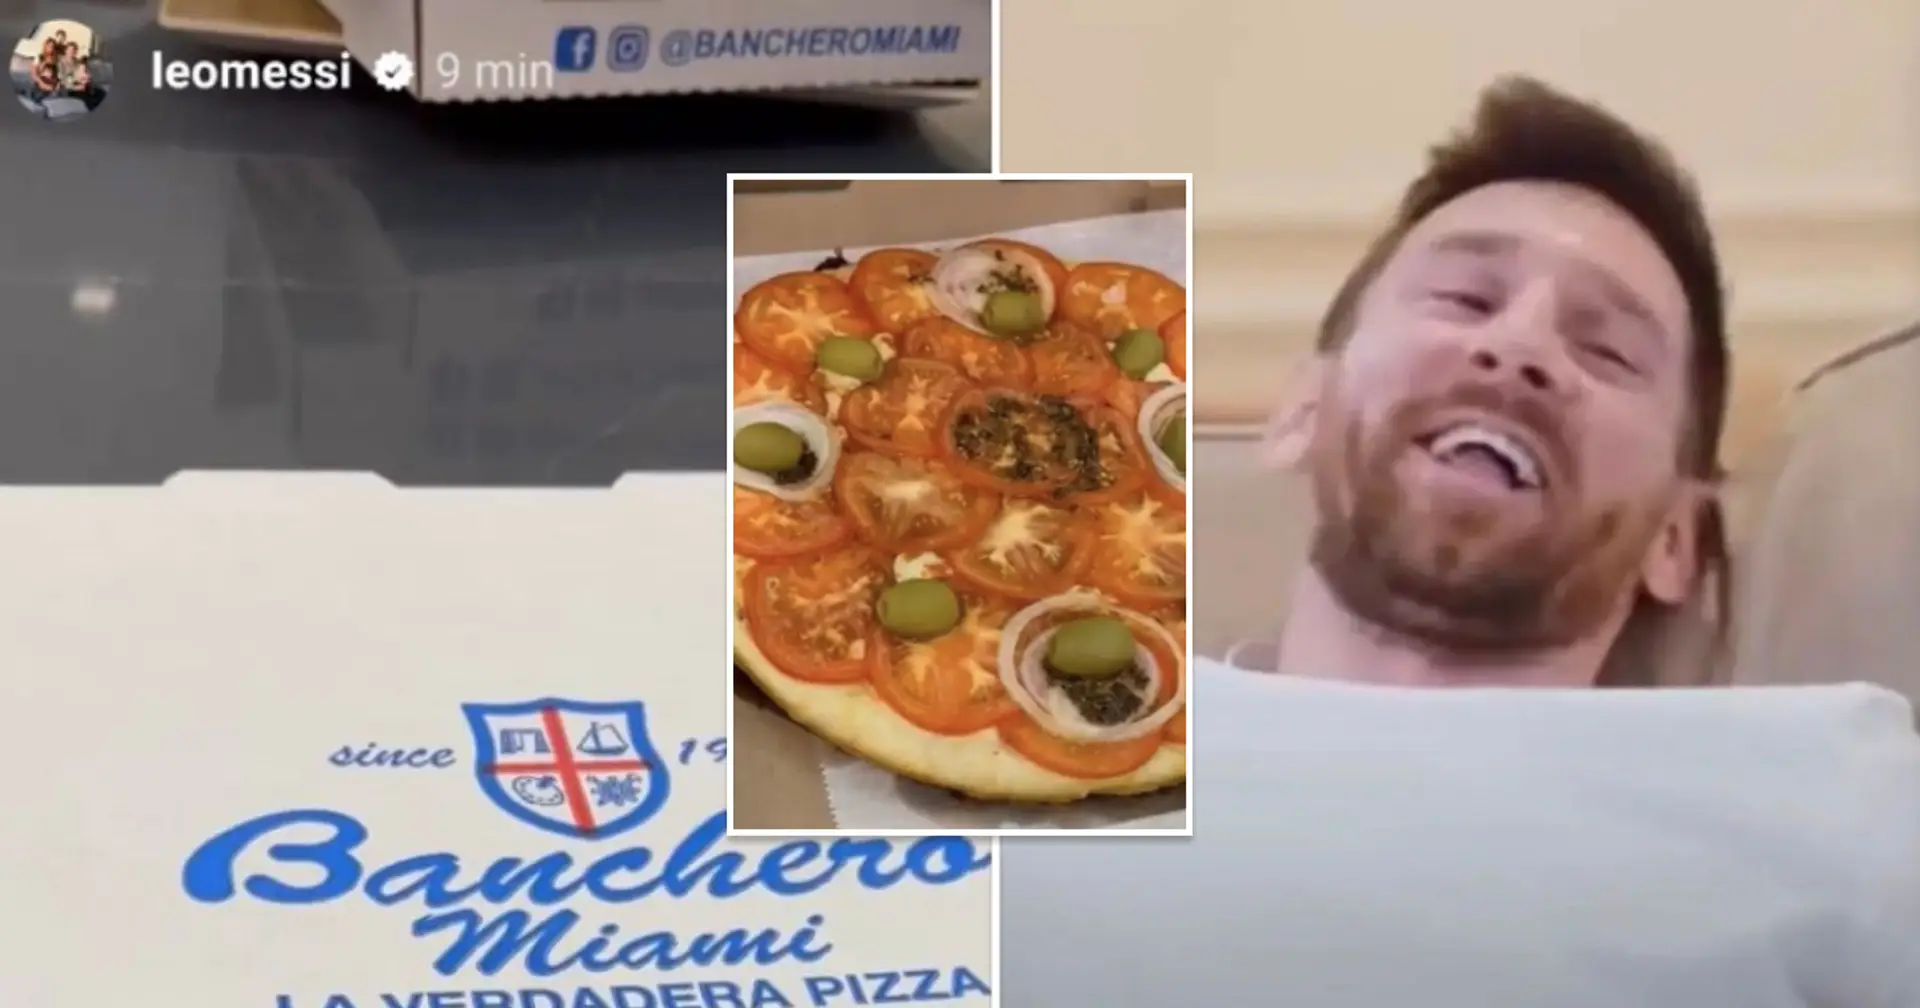 Leo Messi confirma que se perderá el próximo partido del Inter Miami con publicación en Instagram que muestra 'la peor pizza que los fans hayan visto'